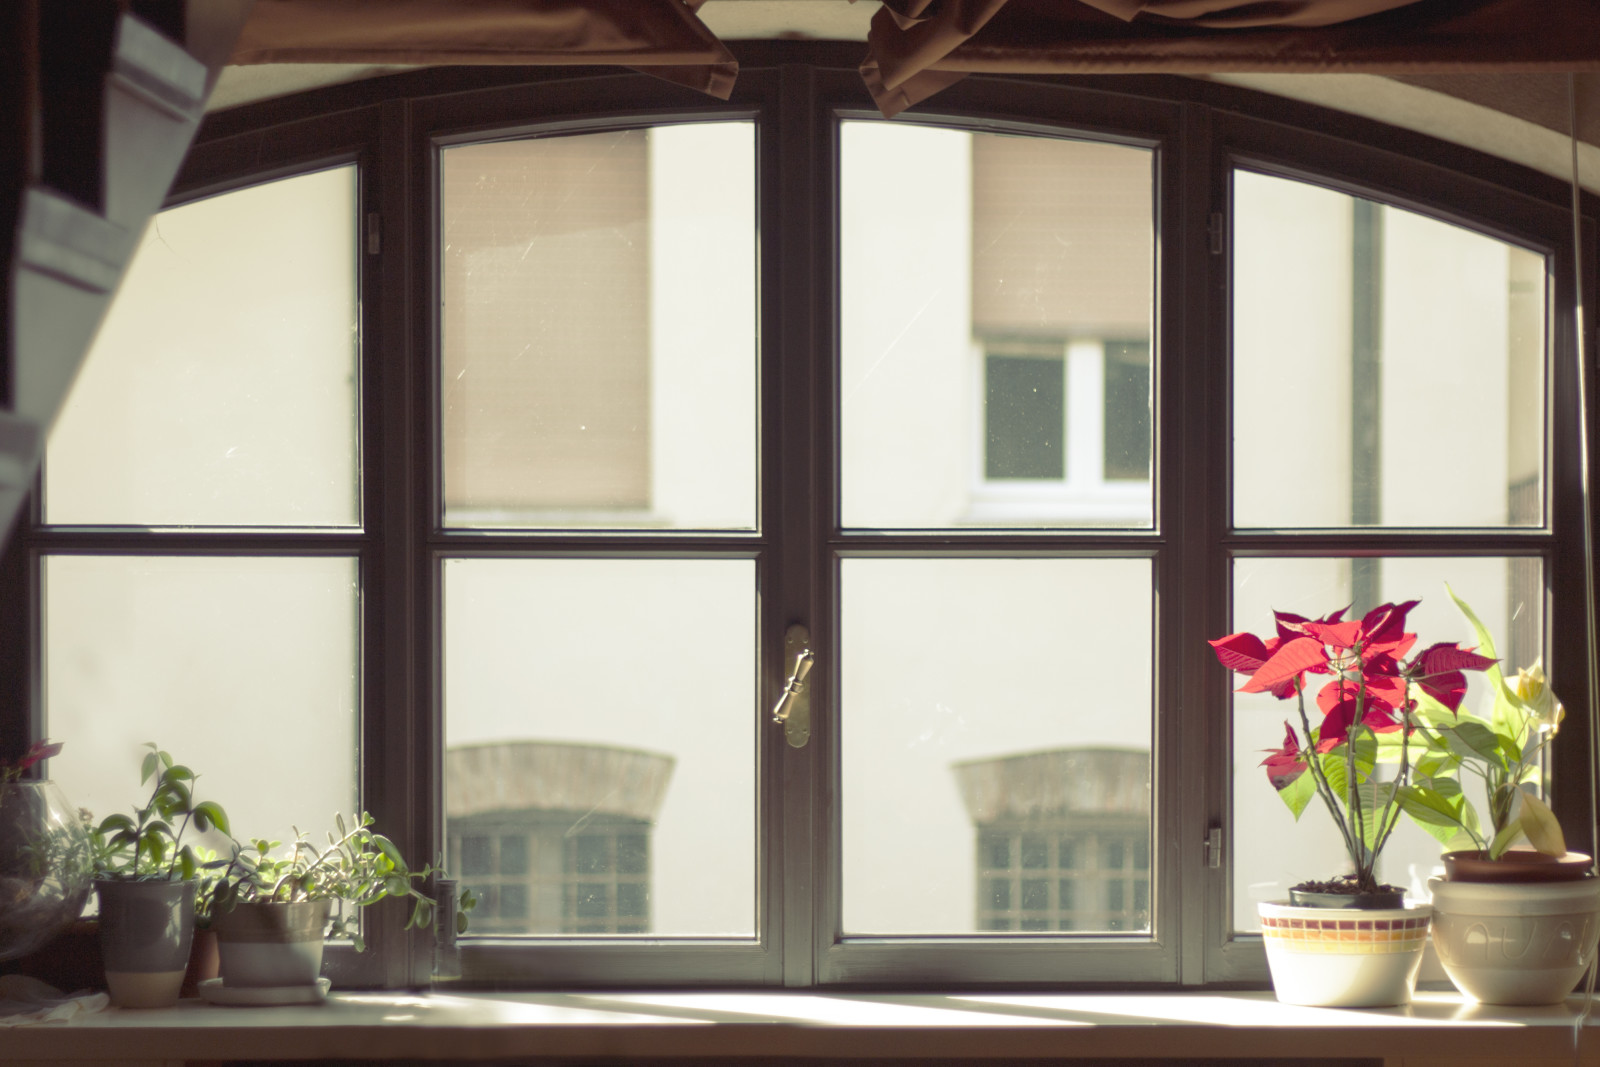 cốc thủy tinh, những bông hoa, cửa sổ, bình